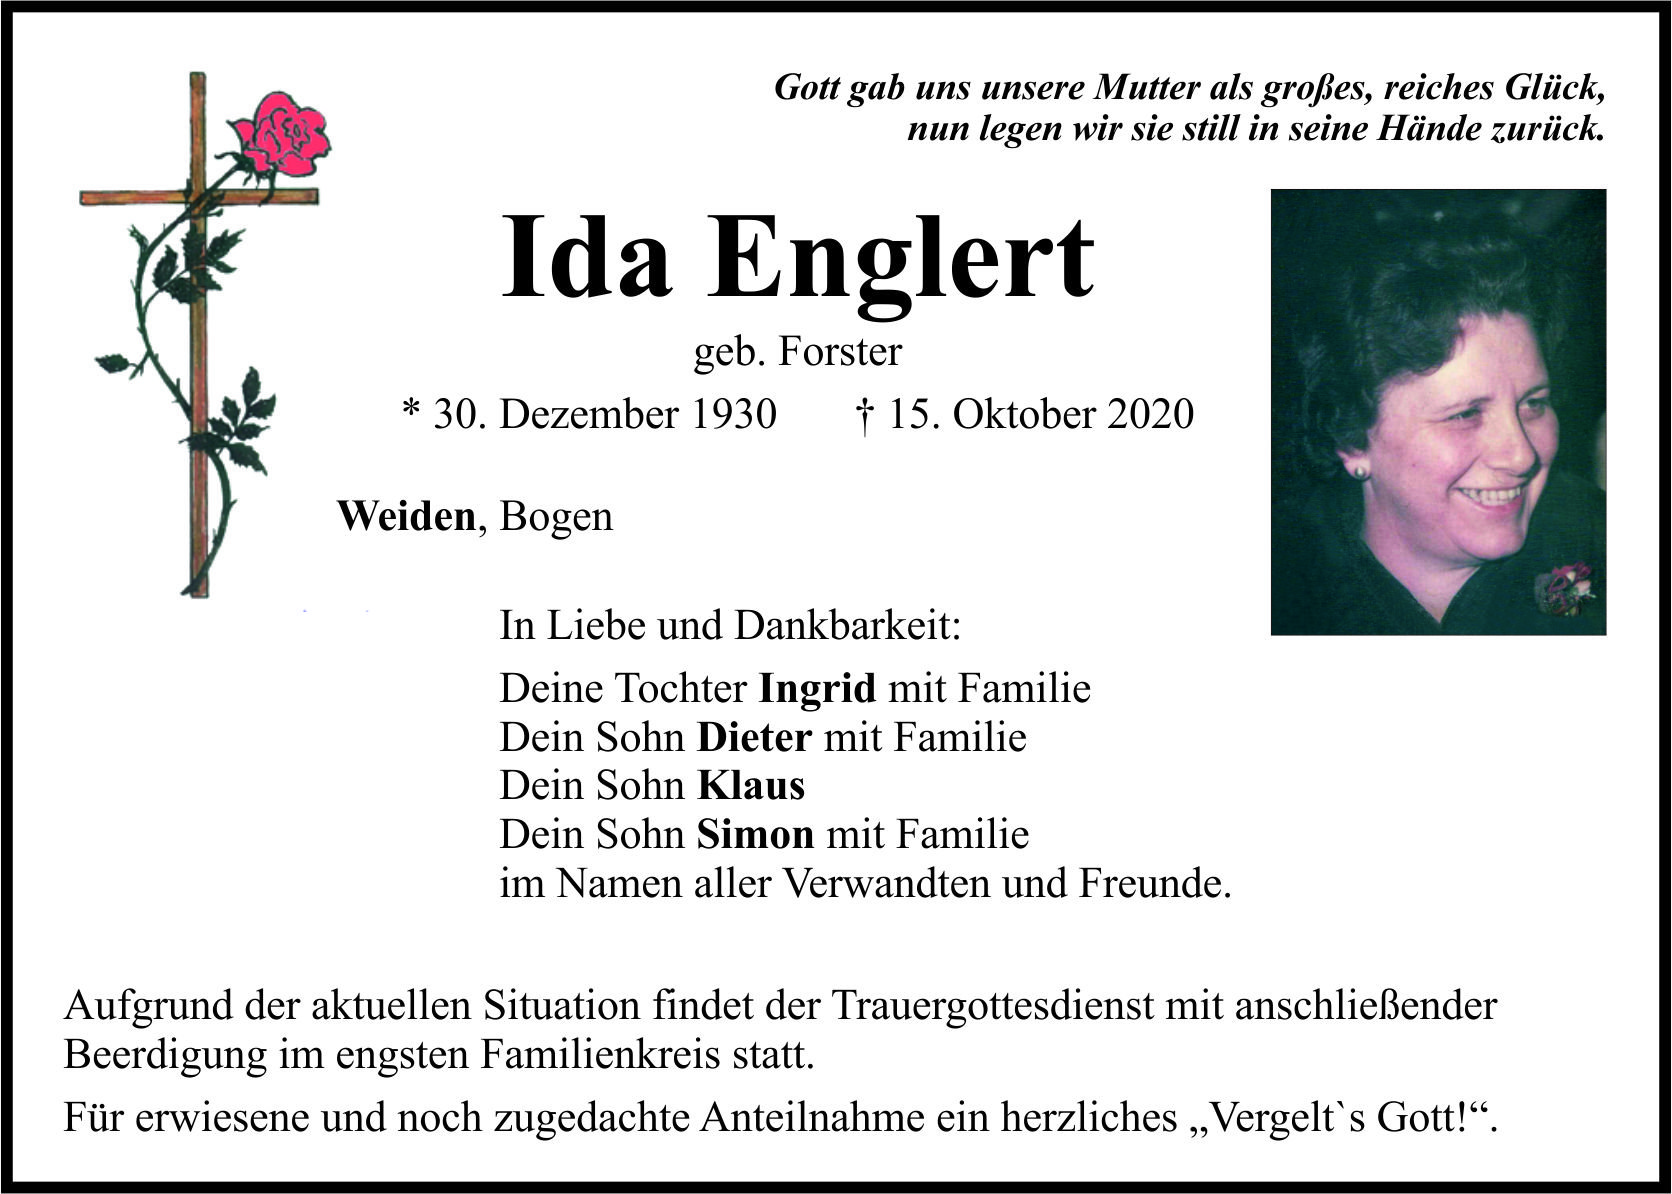 Traueranzeige Ida Englert, Weiden